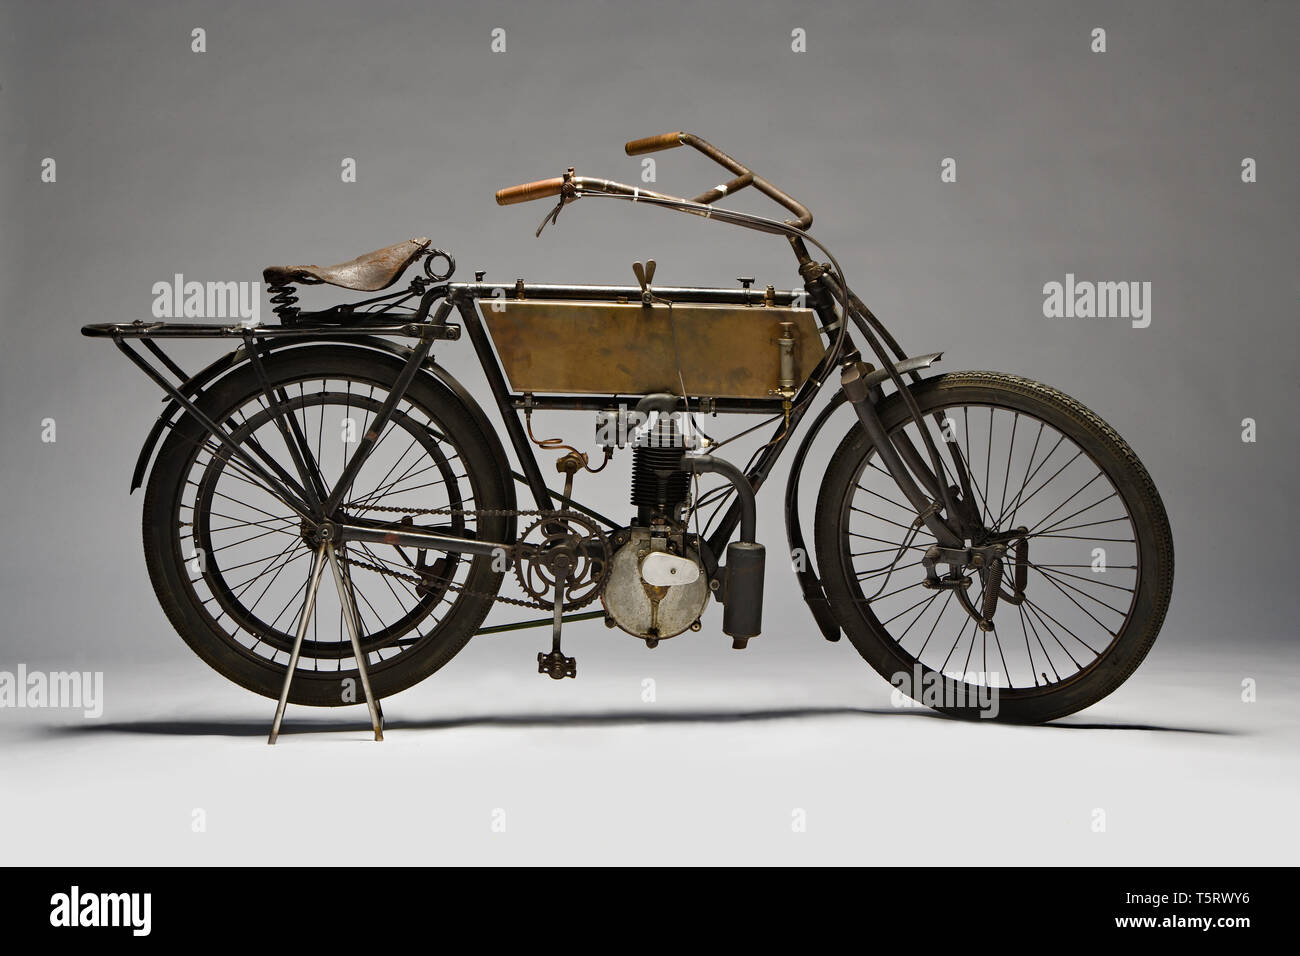 Moto d'epoca Zedel - Frera 3 hp Marca: zedel - Frera modello: 3 HP nazione: Svizzera - St. Aubin Anno: 1903 condizioni: restaurata Cili Stockfoto